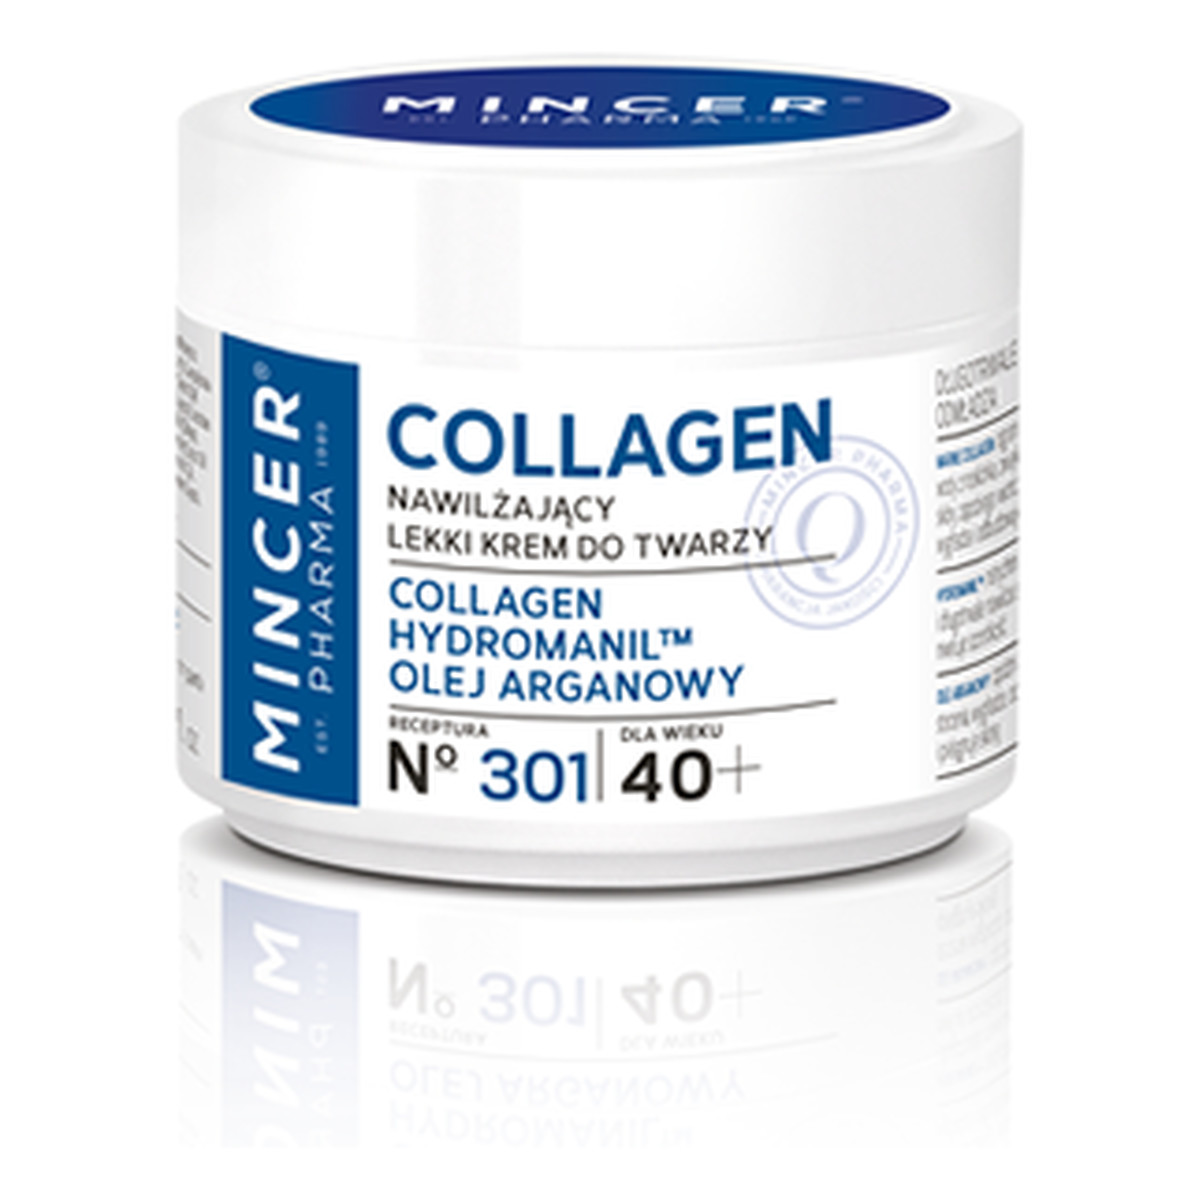 Mincer Pharma Collagen 40+ Nawilżający Lekki Krem Do Twarzy No 301 50ml